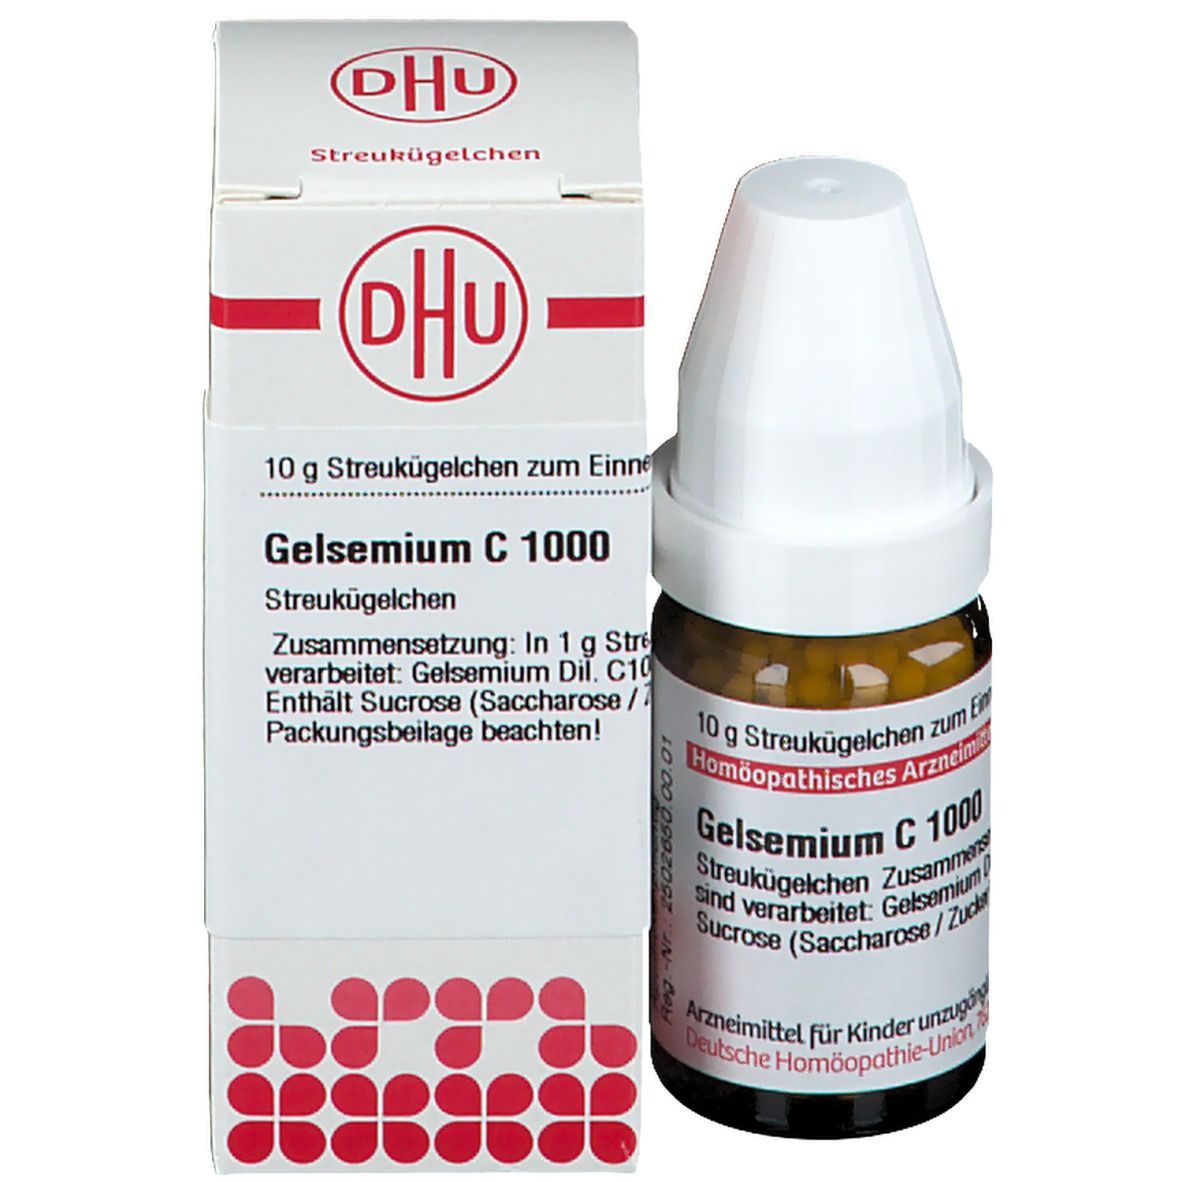 DHU Gelsemium C1000